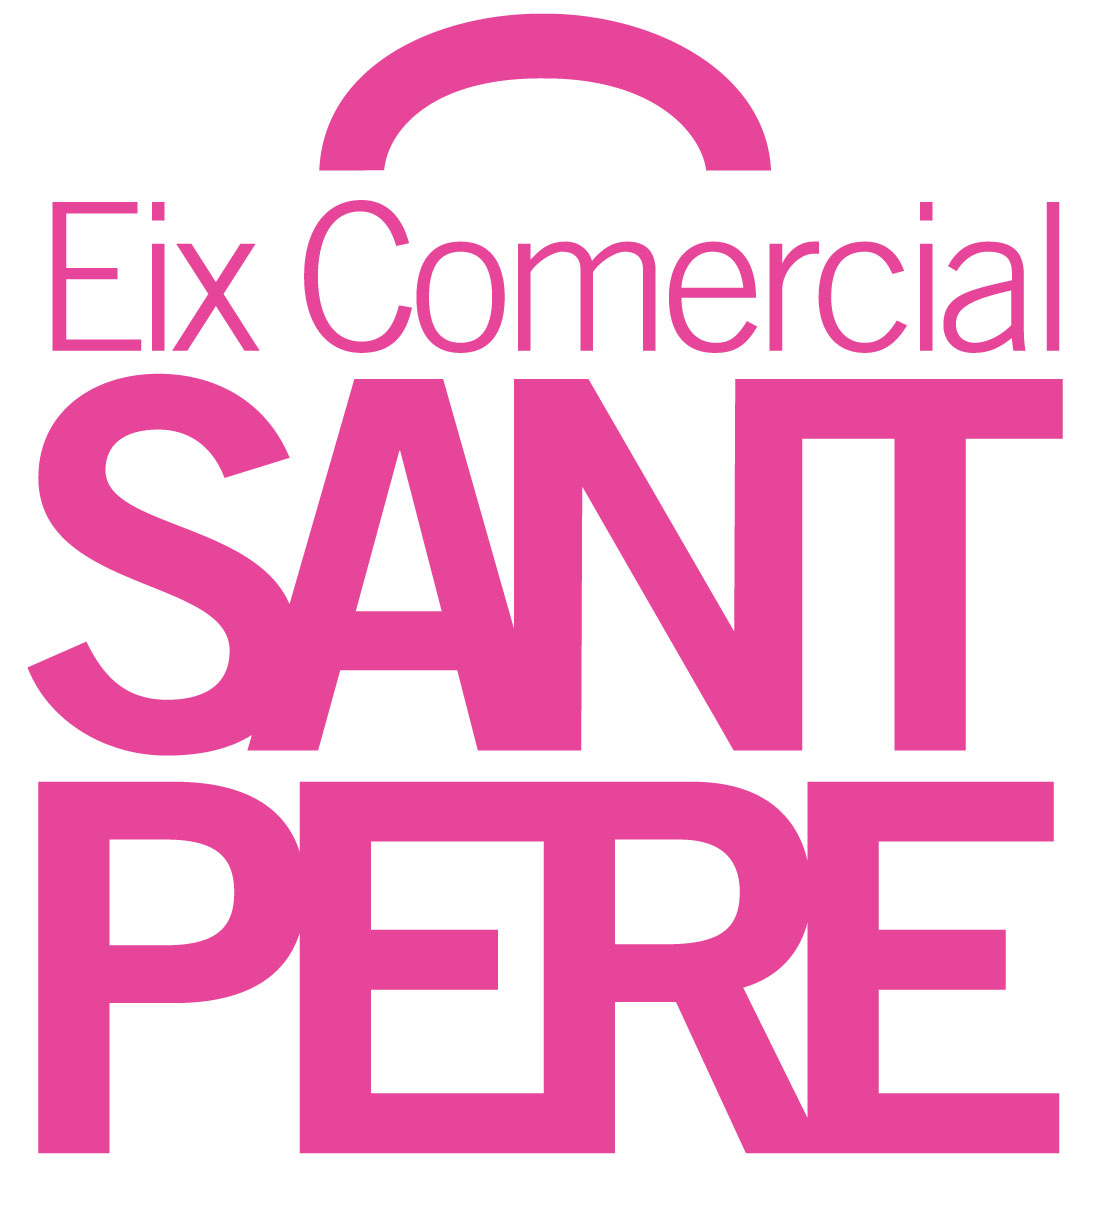 Eix Comercial Sant Pere